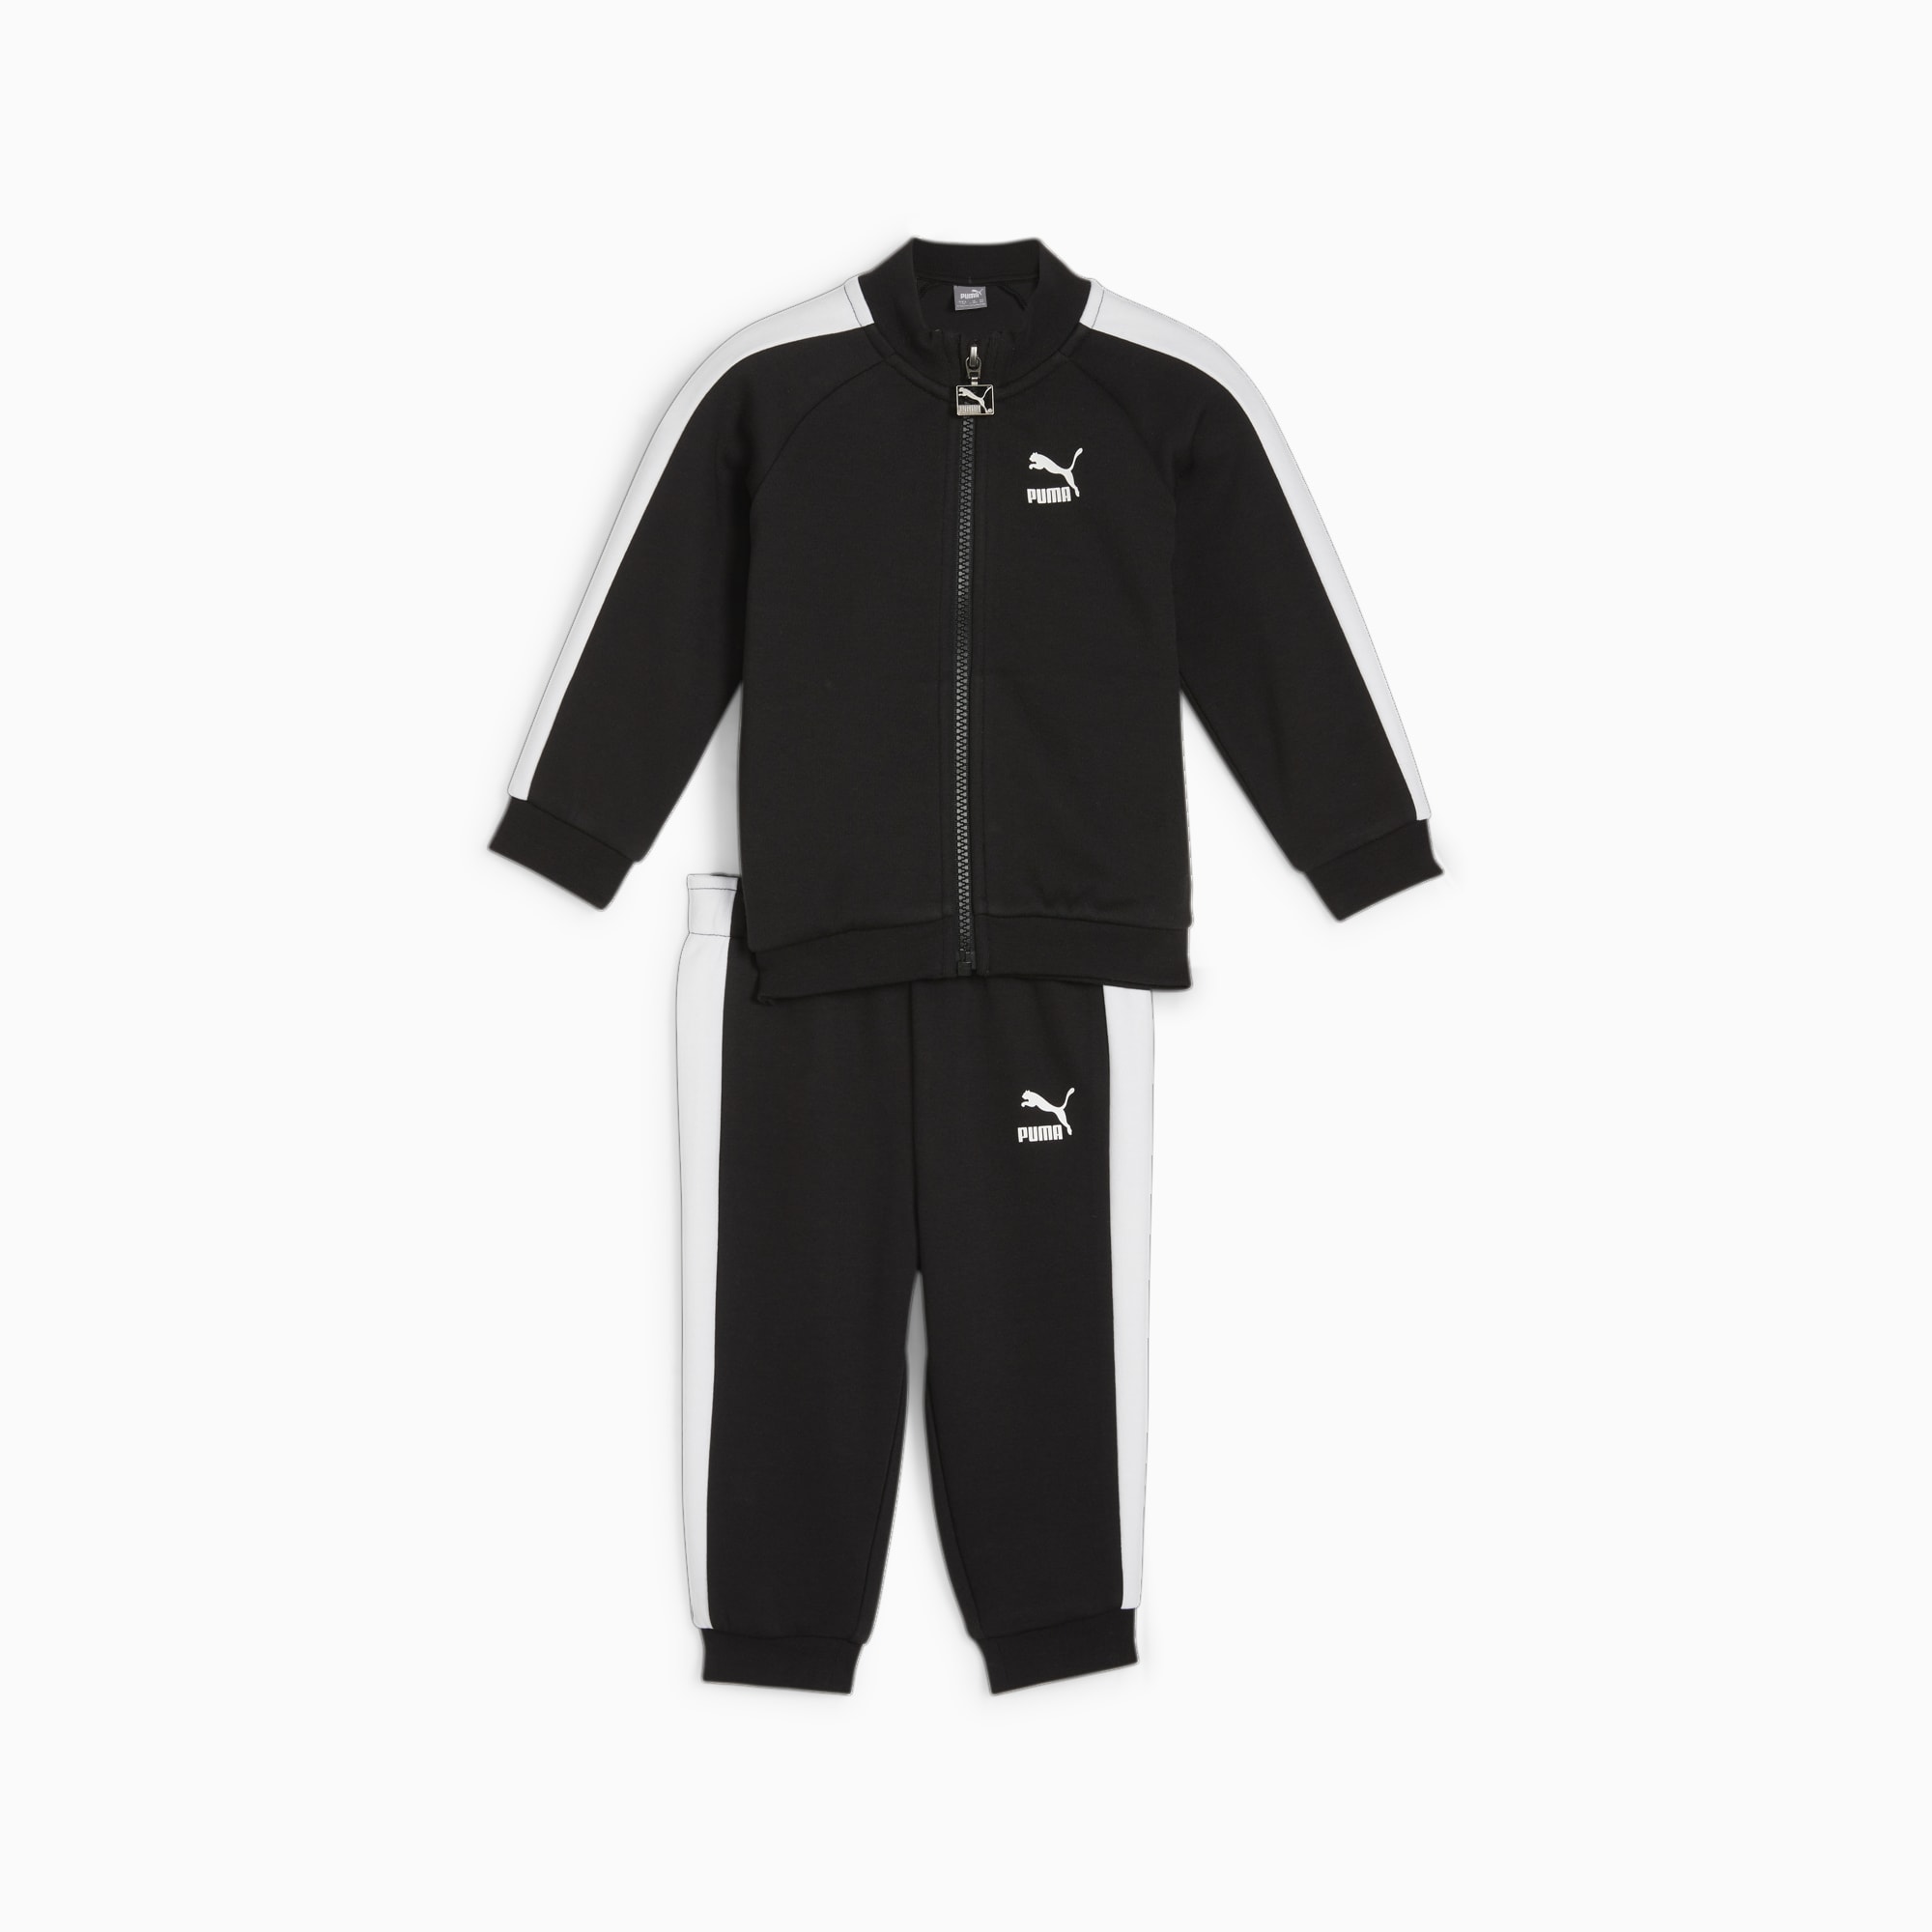 PUMA MINICATS T7 ICONIC Trainingsanzug Baby Für Kinder, Schwarz, Größe: 104, Kleidung